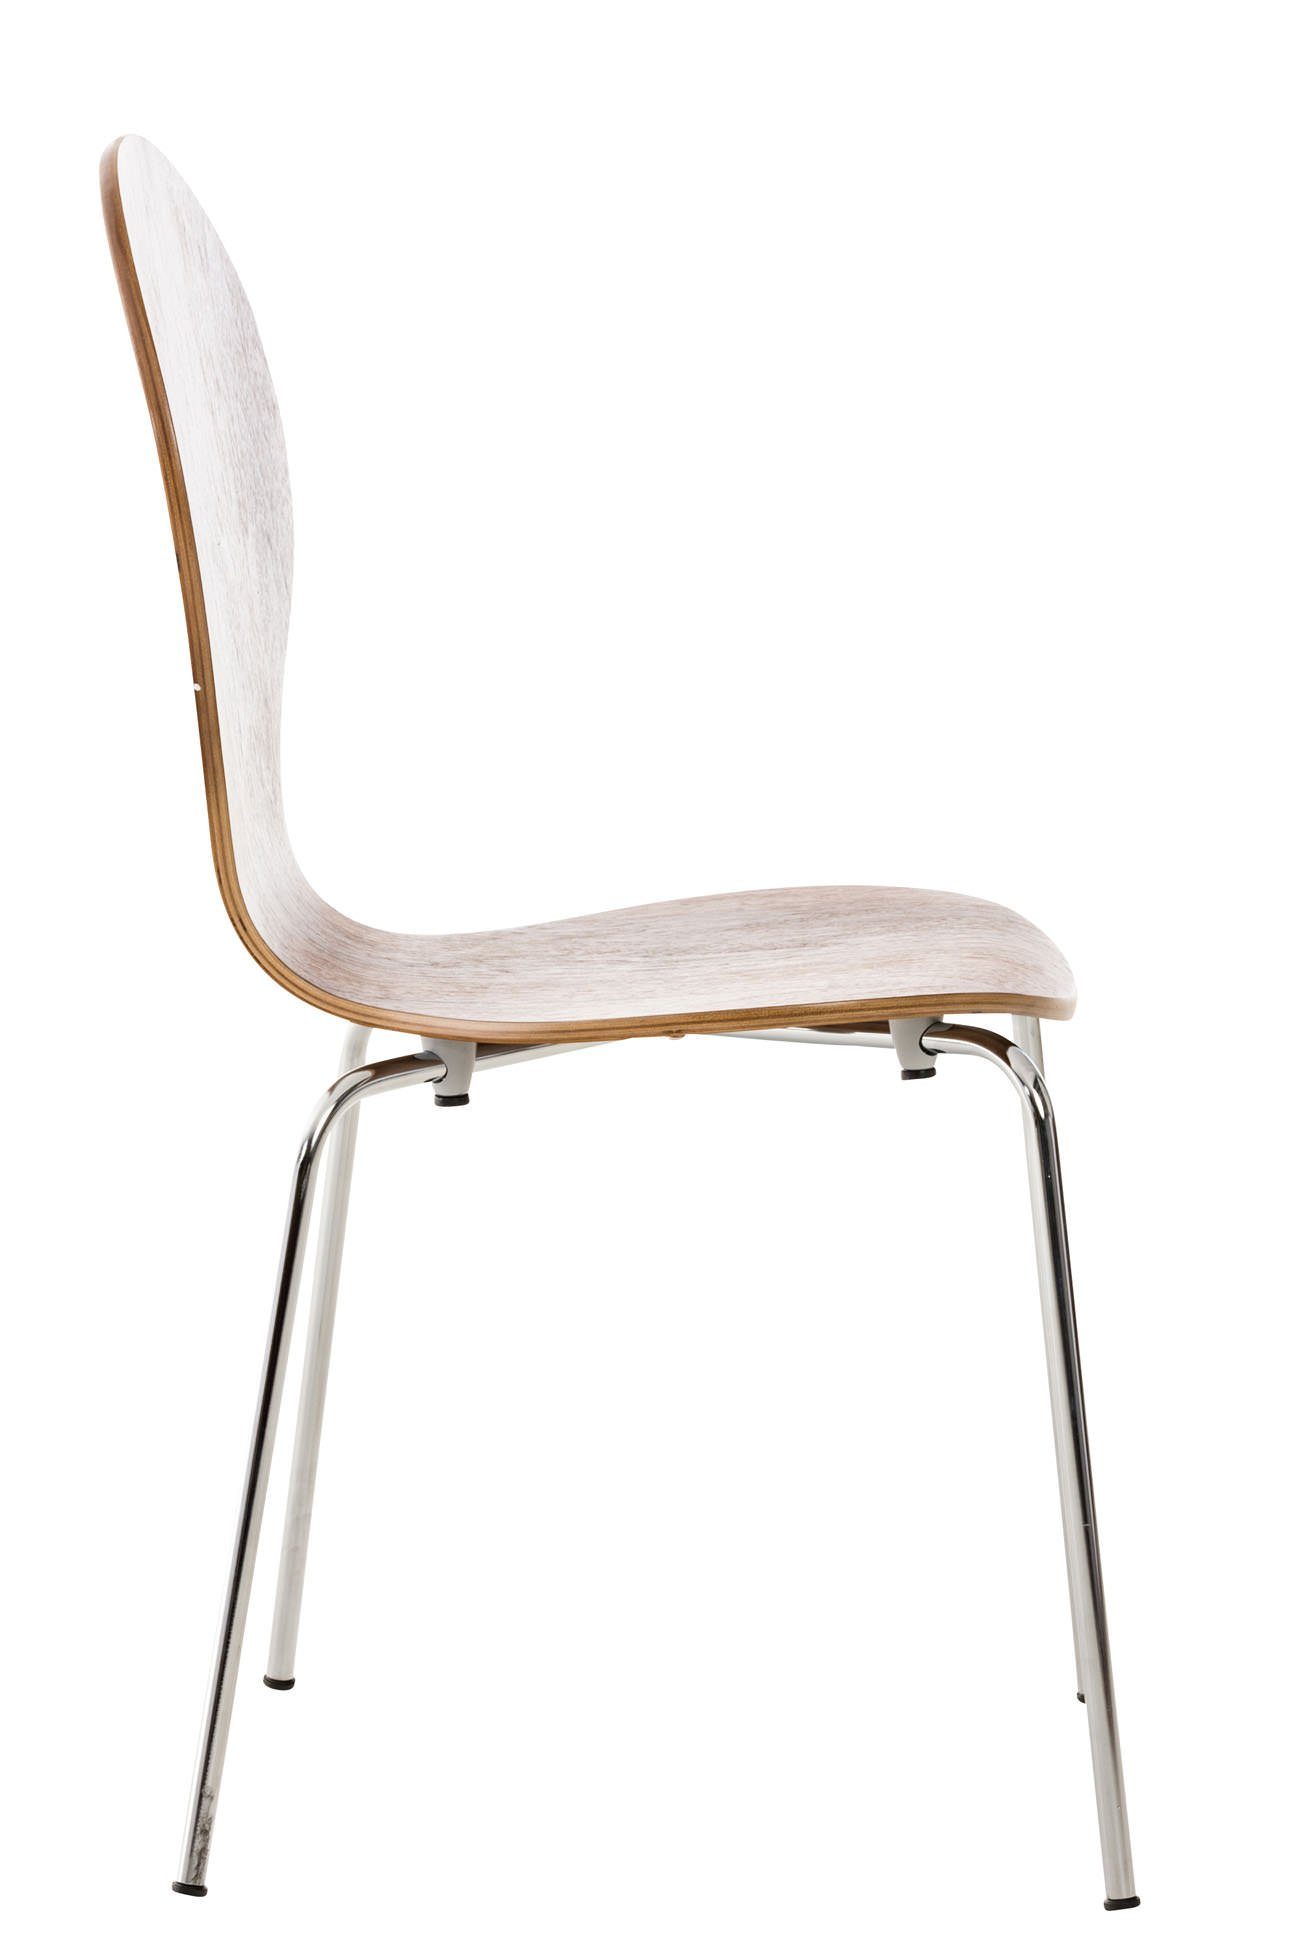 TPFLiving Besucherstuhl braun Holz - Konferenzstuhl ergonomisch - Warteraumstuhl - mit Sitzfläche: Gestell: Messestuhl), - chrom Metall Daggy Sitzfläche (Besprechungsstuhl geformter